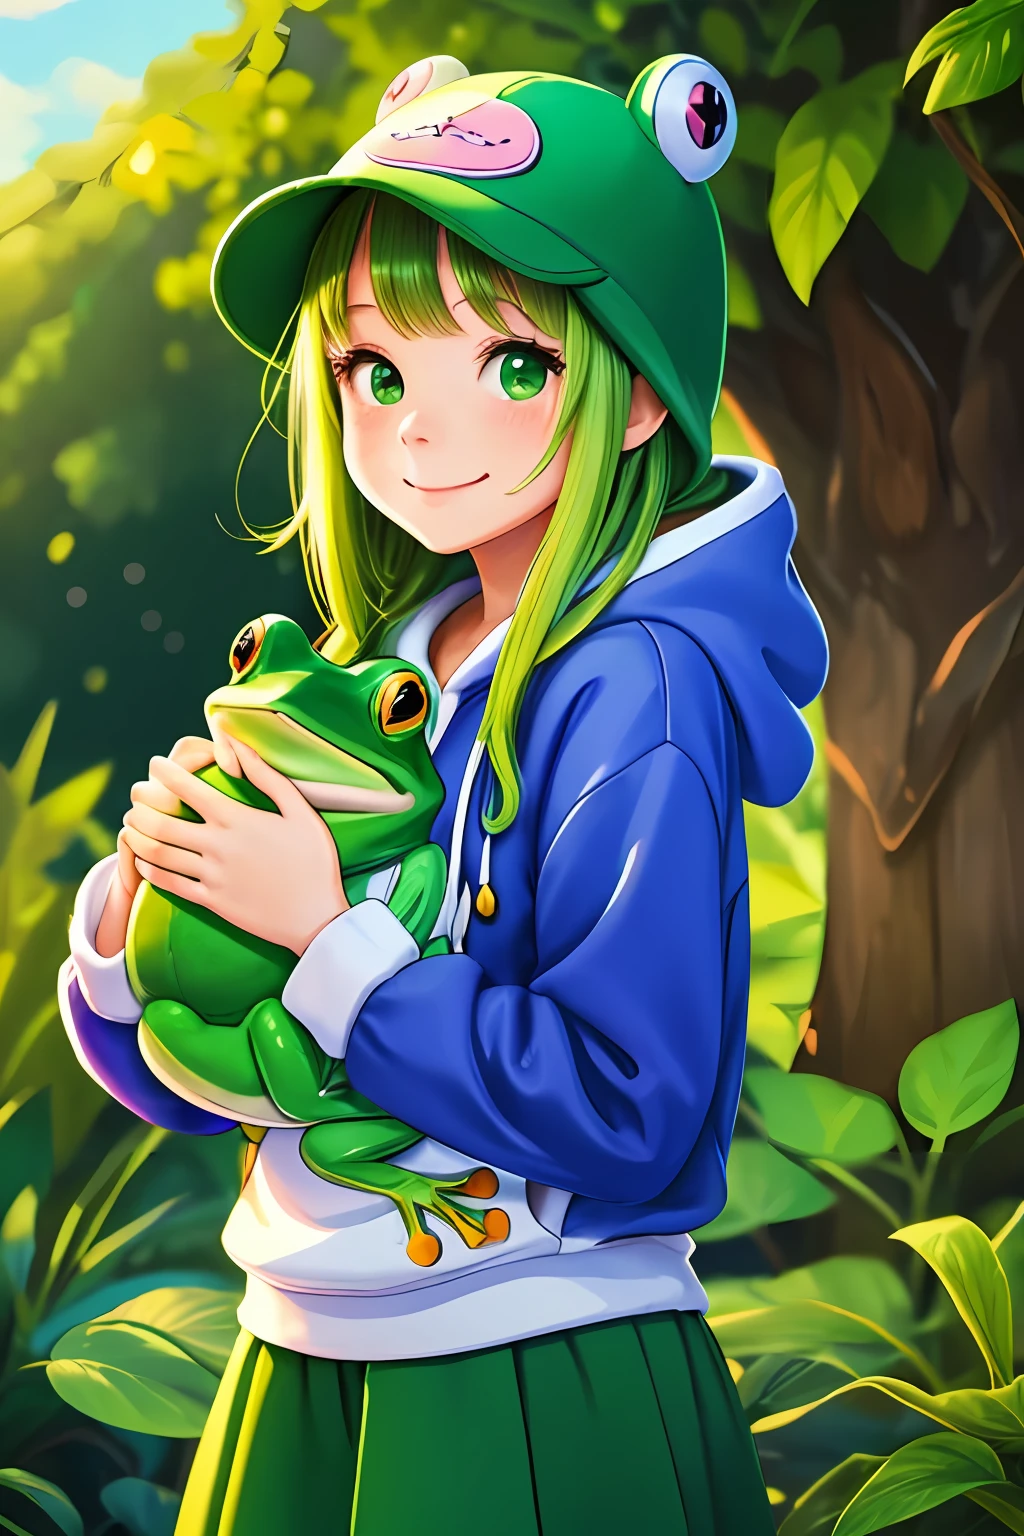 ((最高品質)),(カラフルなイラスト),(1人の女の子),かわいいスタイル, 緑のカエルの帽子とパーカー, カエルのぬいぐるみを持っている, 大きな丸い目とかわいい笑顔, 彼女の背後には豊かな緑が広がる, 鮮やかな青空, 幸せでエネルギッシュな雰囲気.